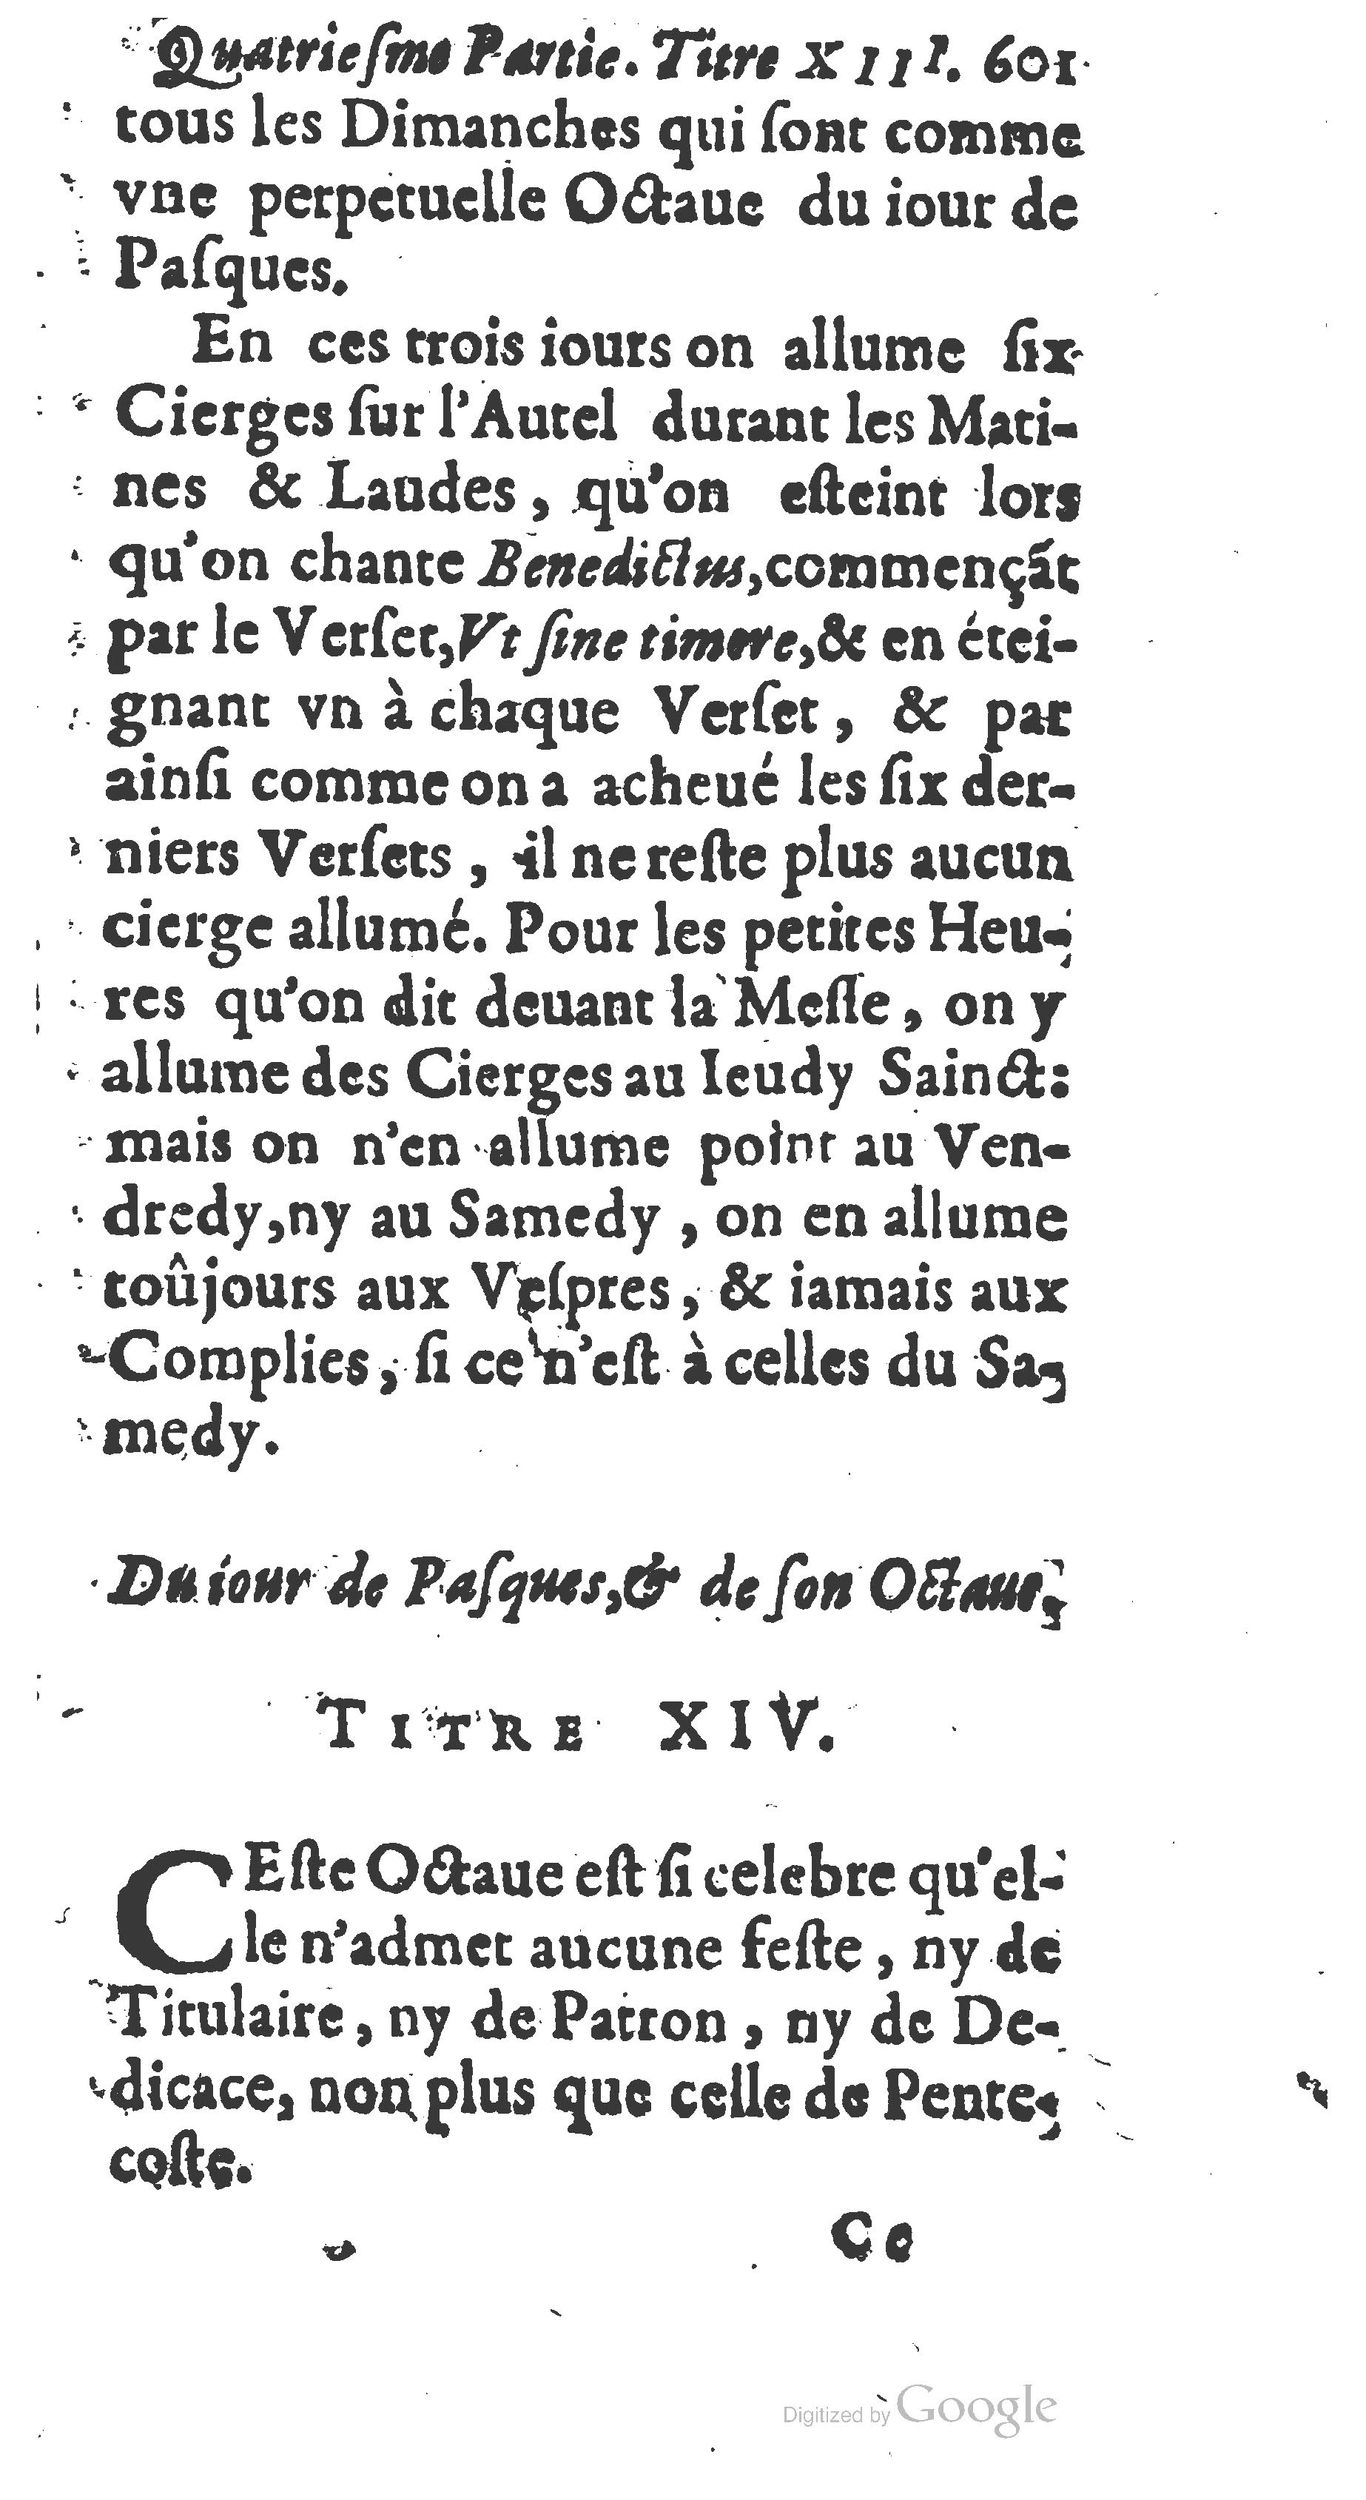 1651 Abrégé du trésor des cérémonies ecclésiastiques Guillermet_BM Lyon_Page_620.jpg